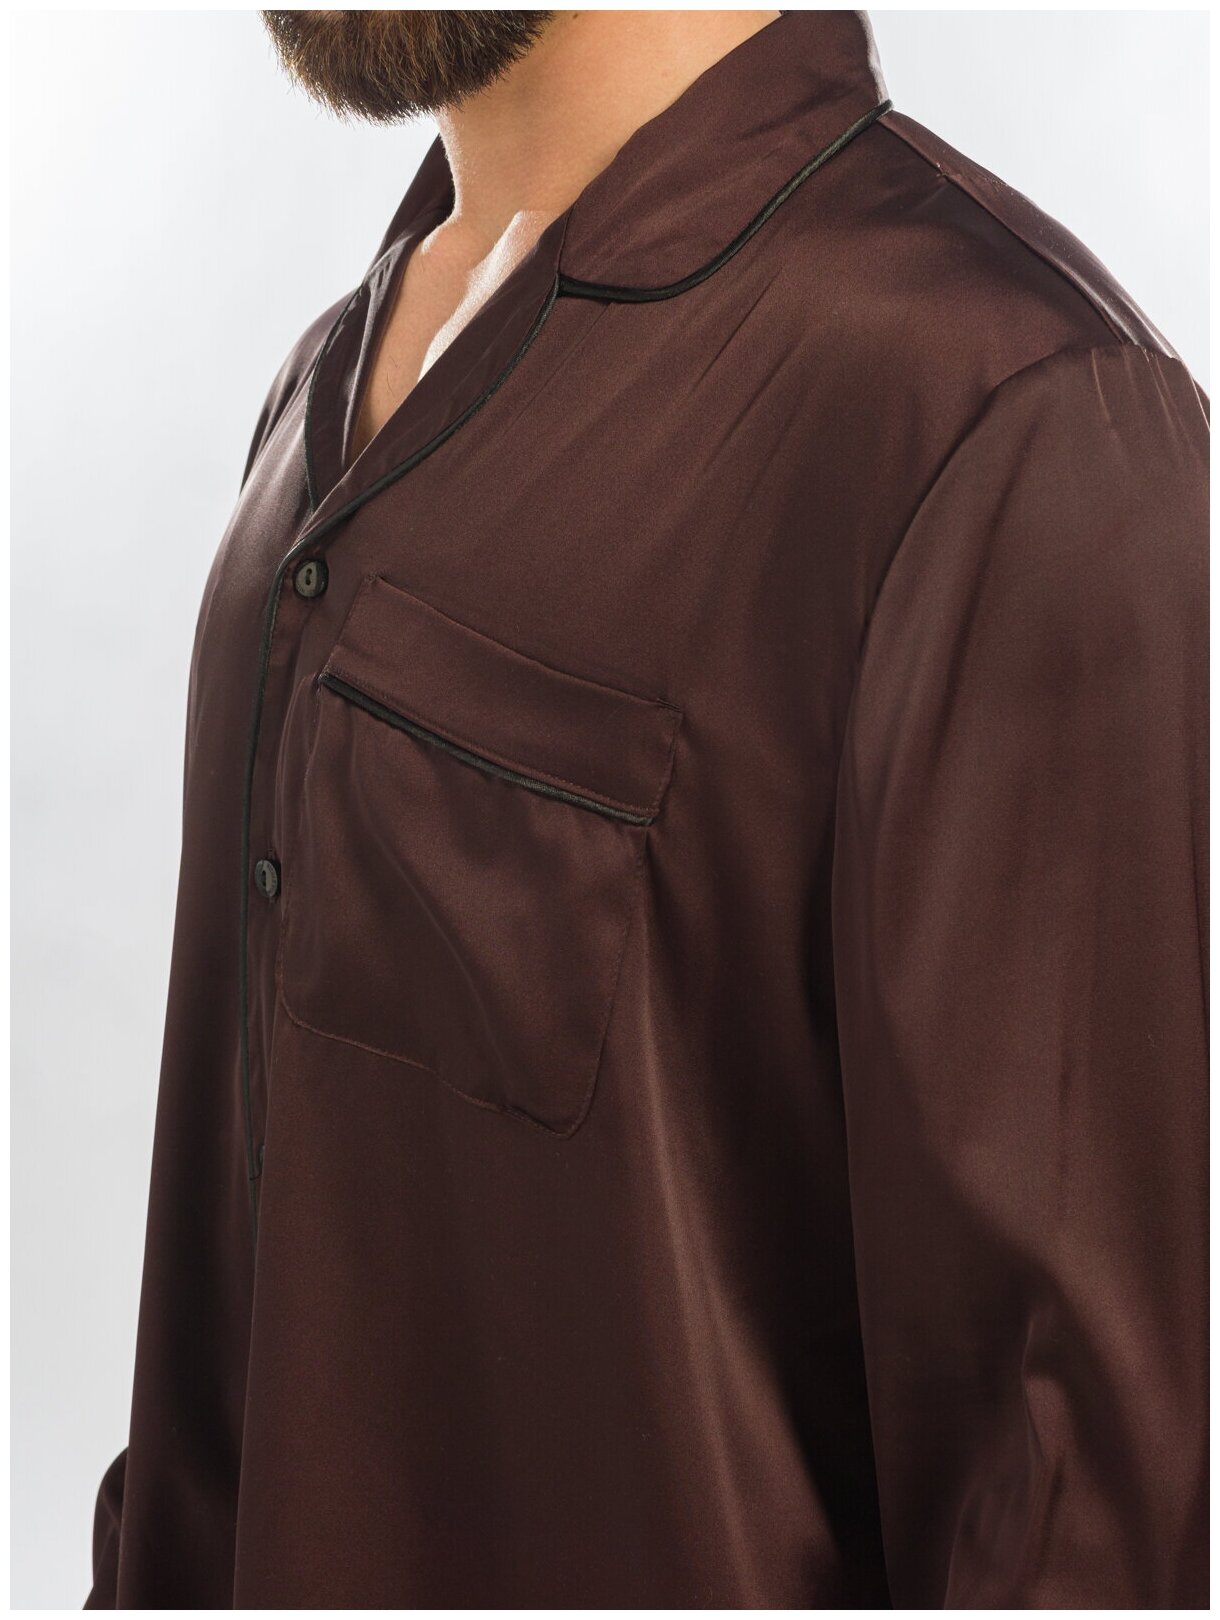 Пижама мужская Nicole Home размер XL коричневая - фотография № 3